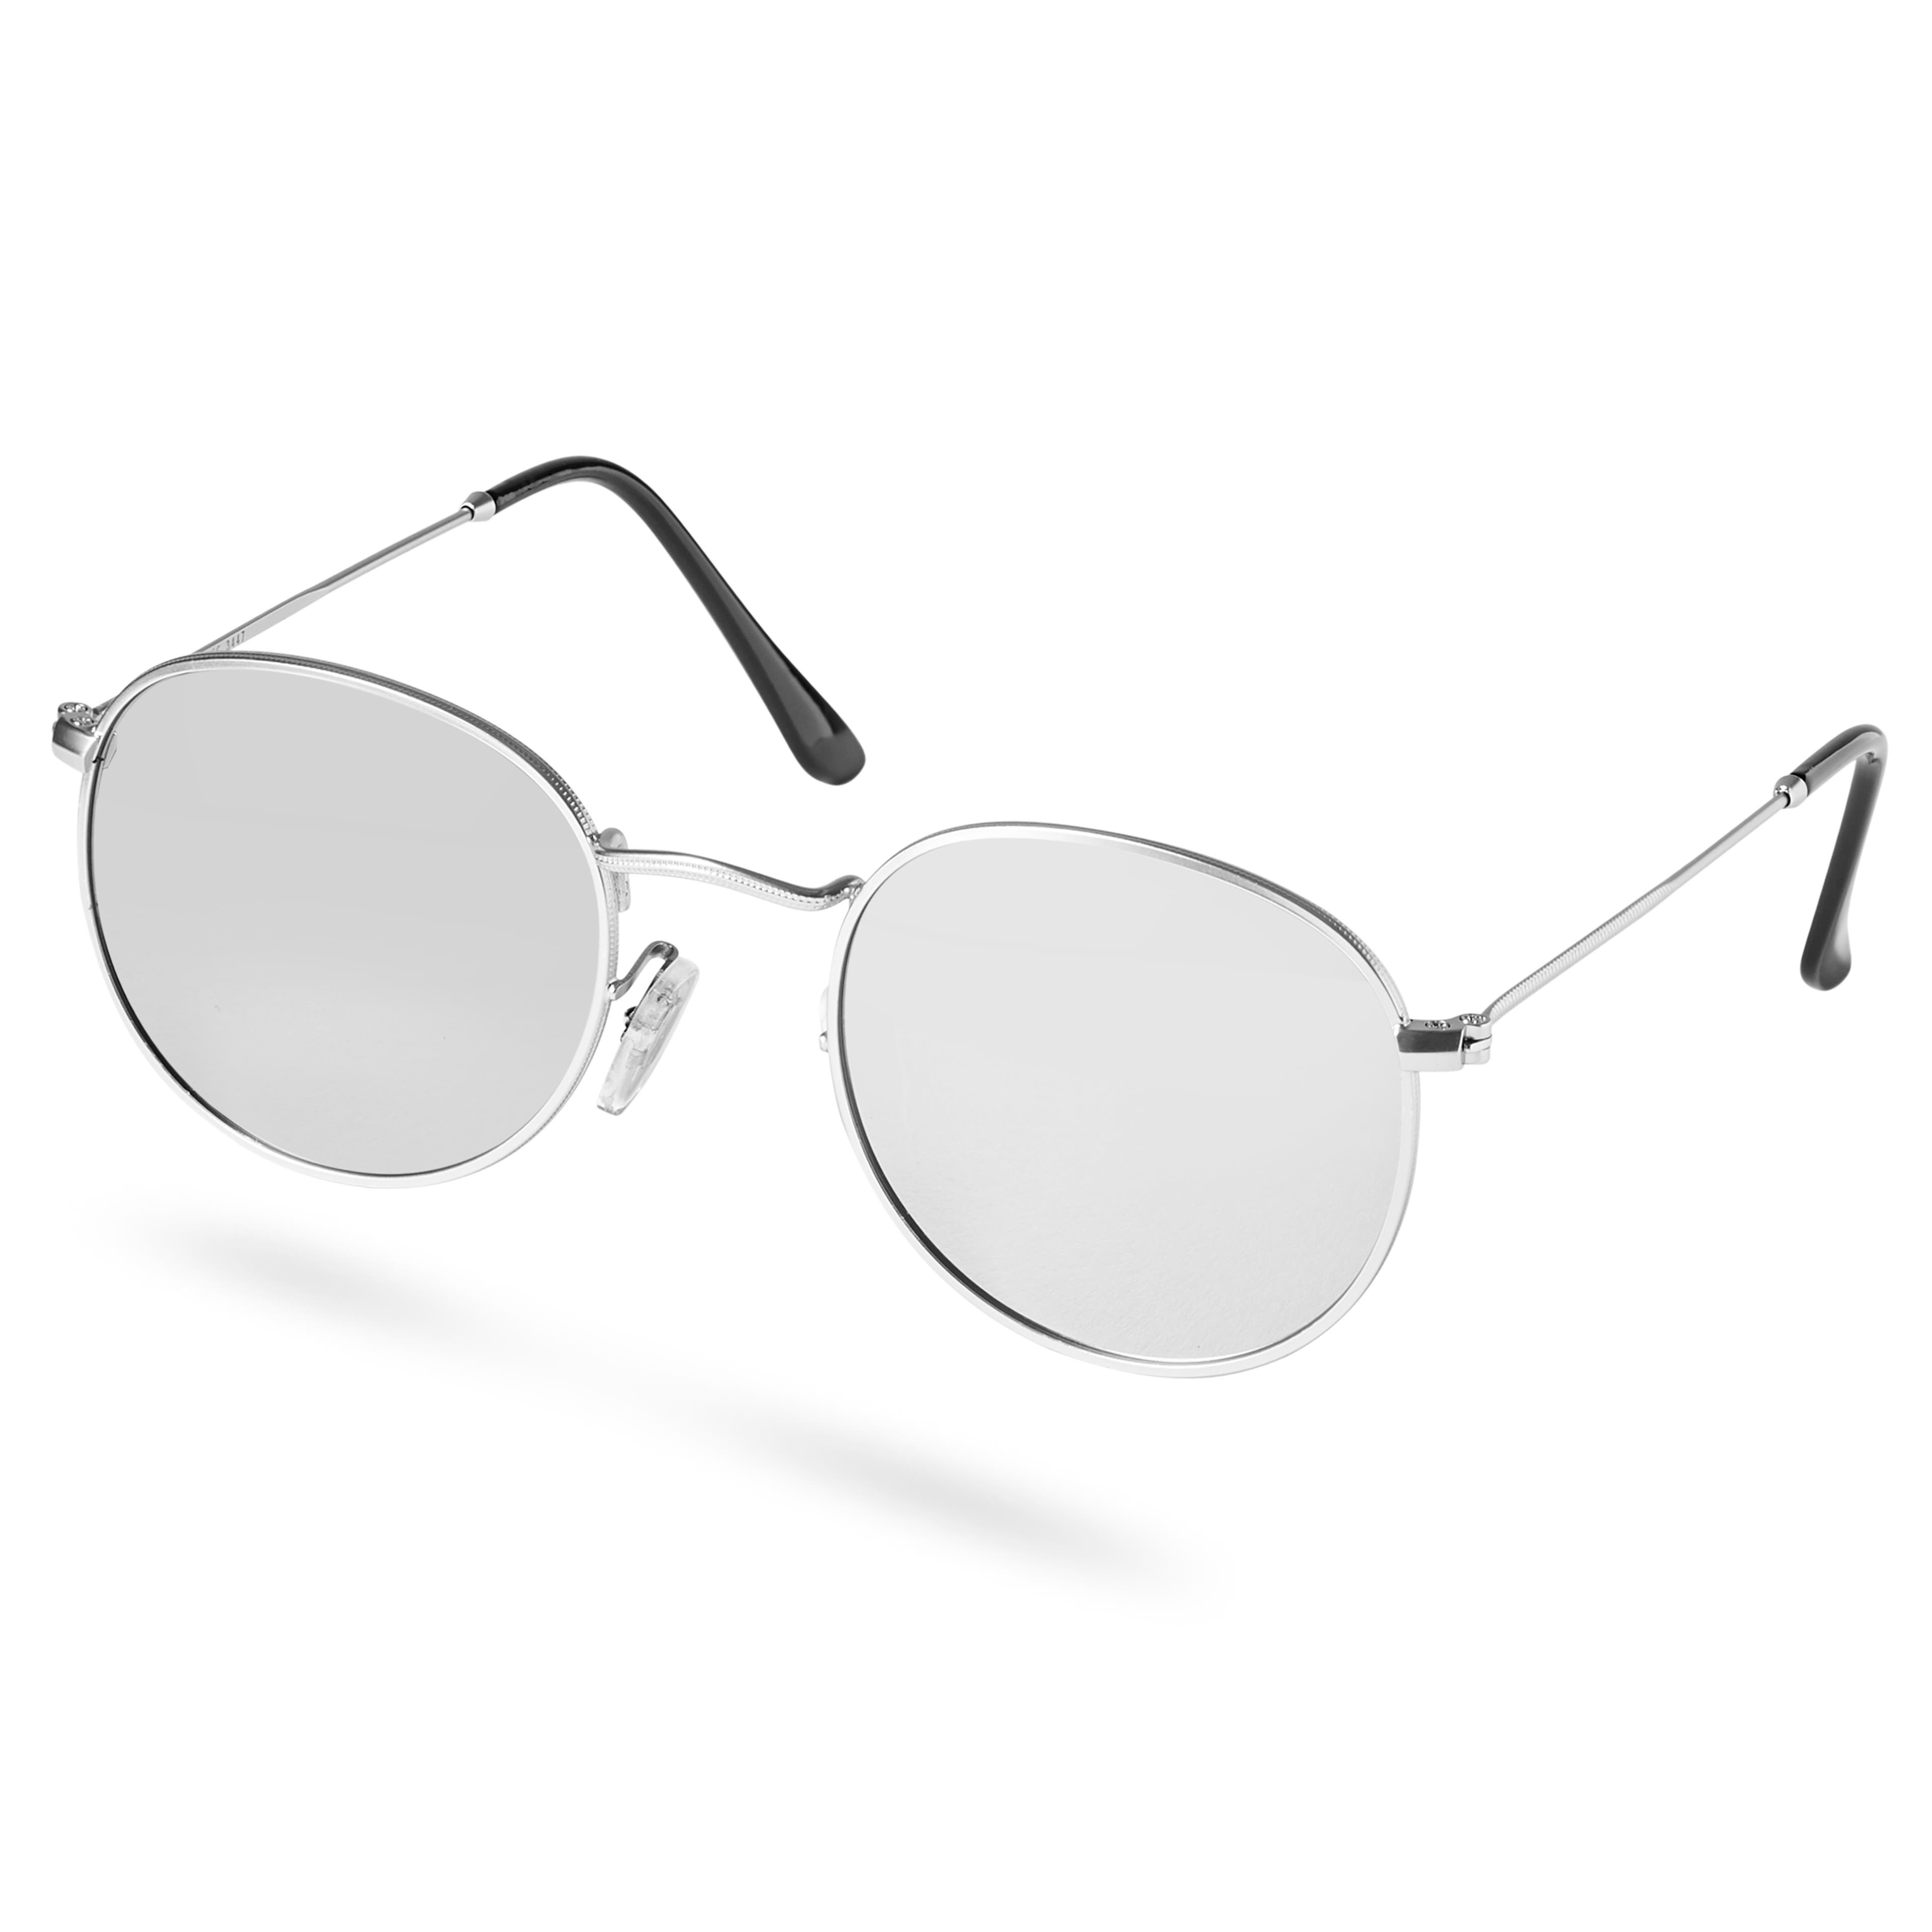 Dandy Silver-Tone Polarized Sunglasses